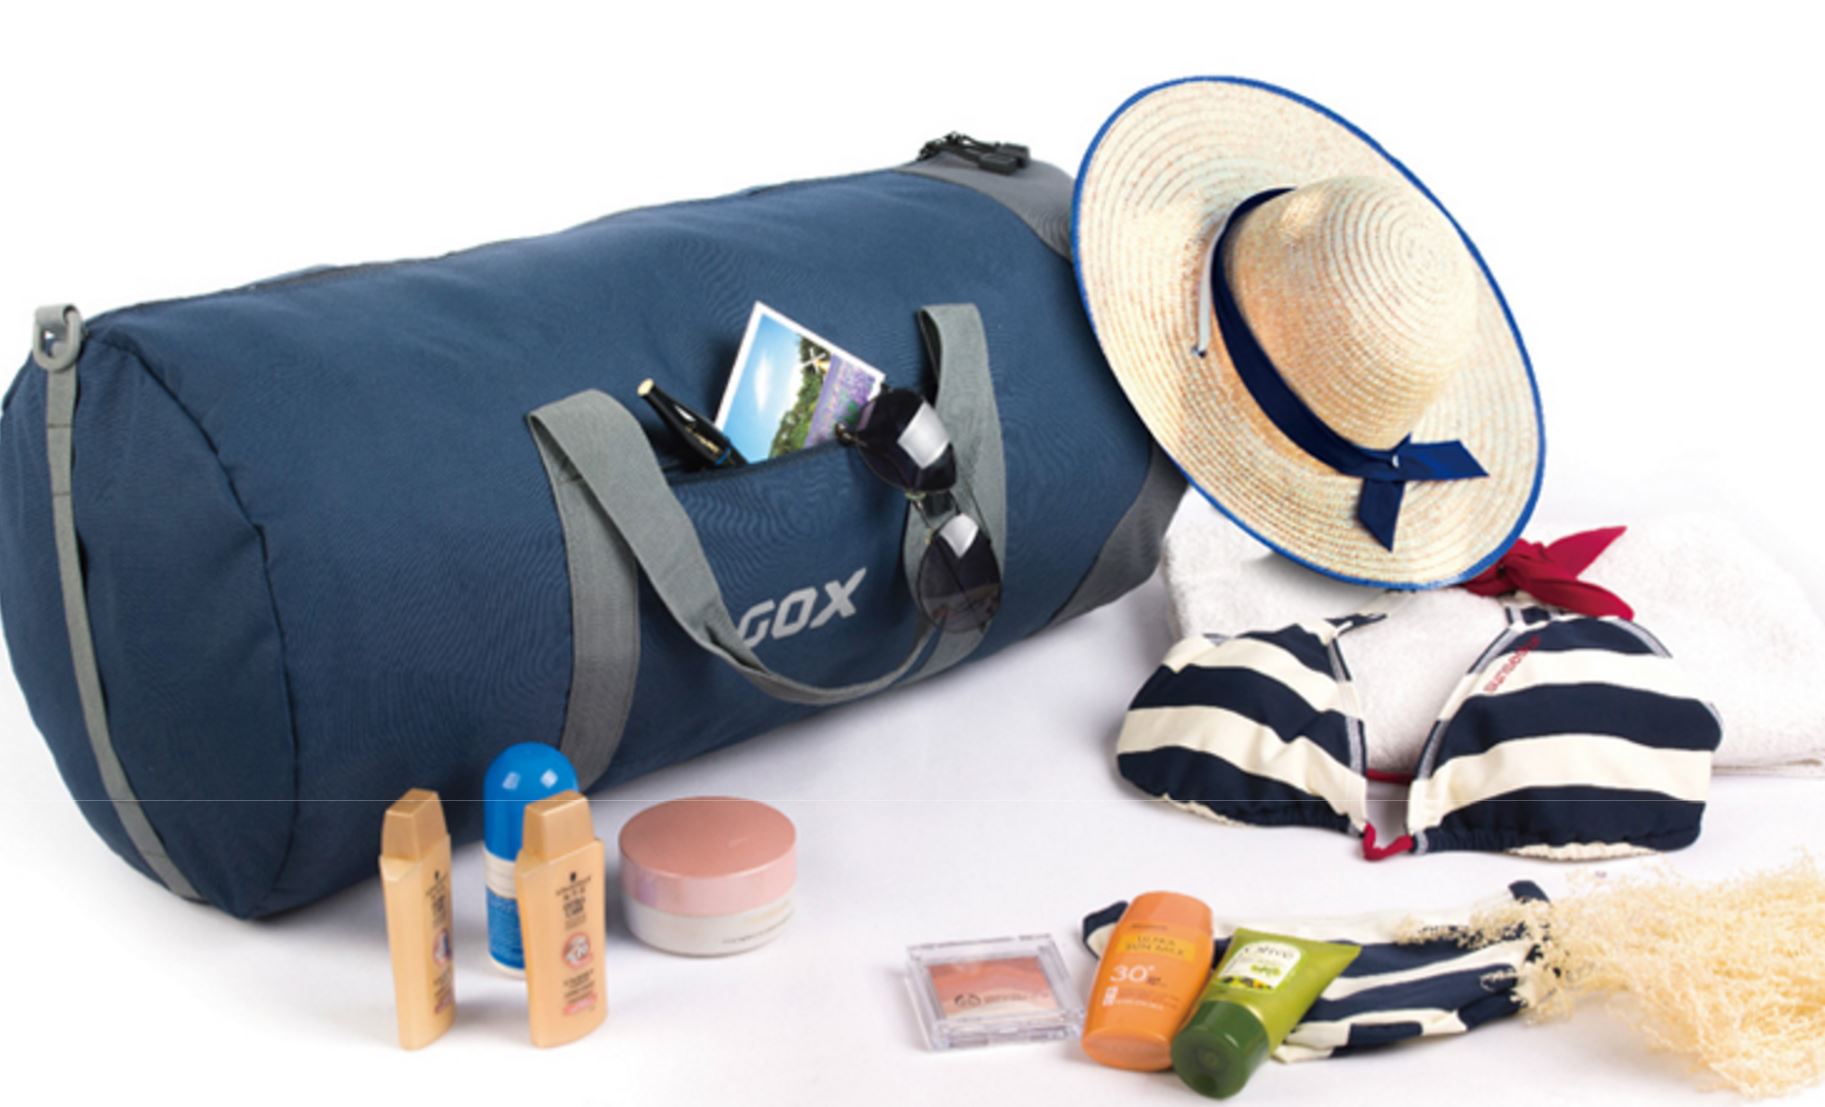 Du lịch Sapa mùa đông cần chuẩn bị gì? Bạn đừng quên mang theo một số đồ dùng cá nhân cần thiết khi đi du lịch 